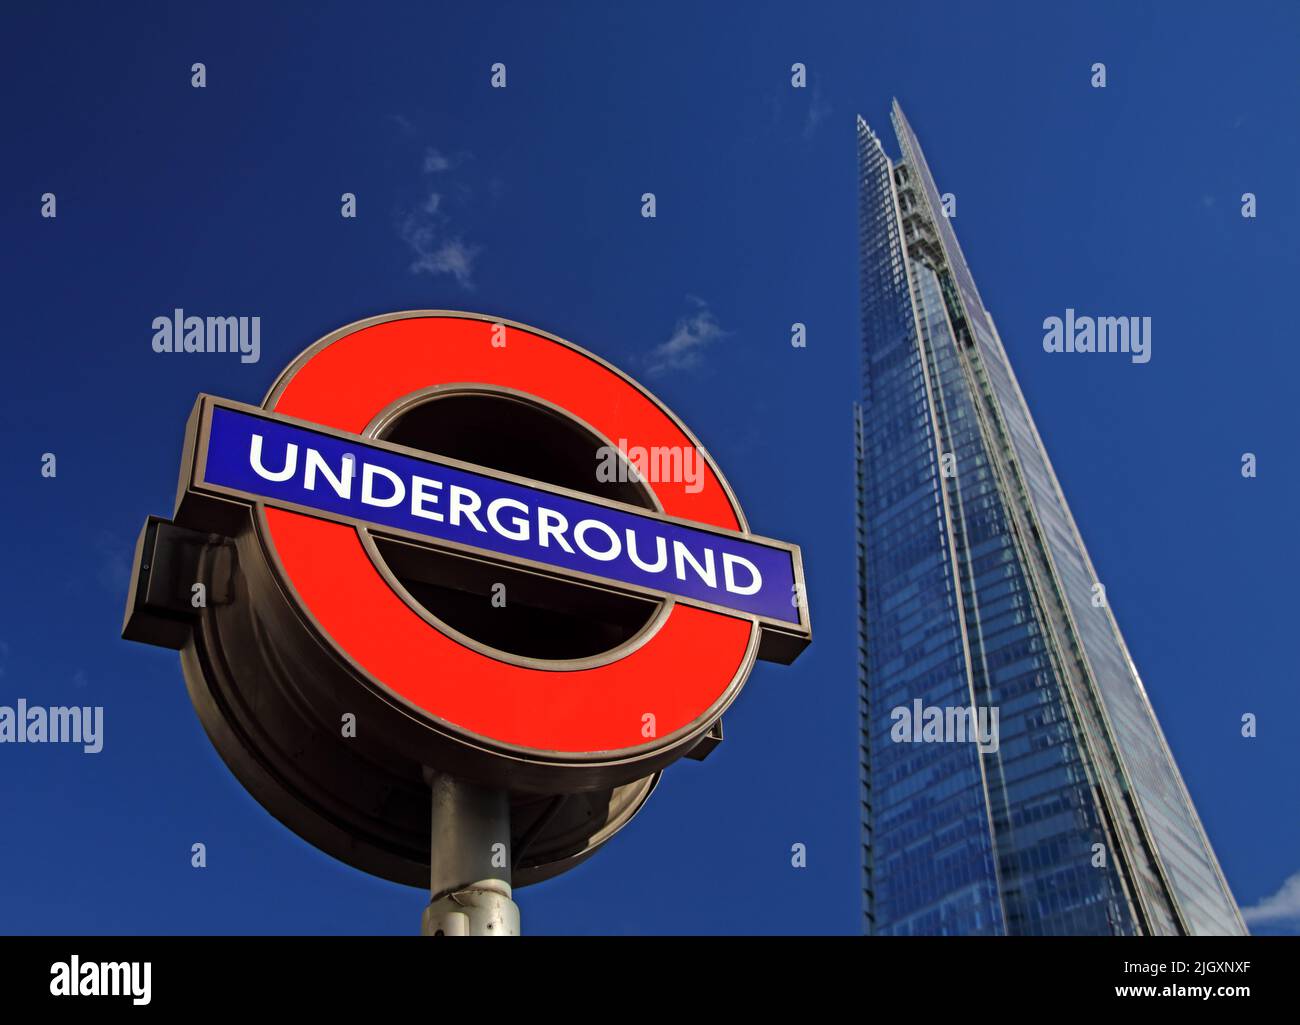 Métro de Londres TFL Roundel et le gratte-ciel de Shard, 32 London Bridge Road, Londres, Angleterre, Royaume-Uni, SE1 9SG Banque D'Images